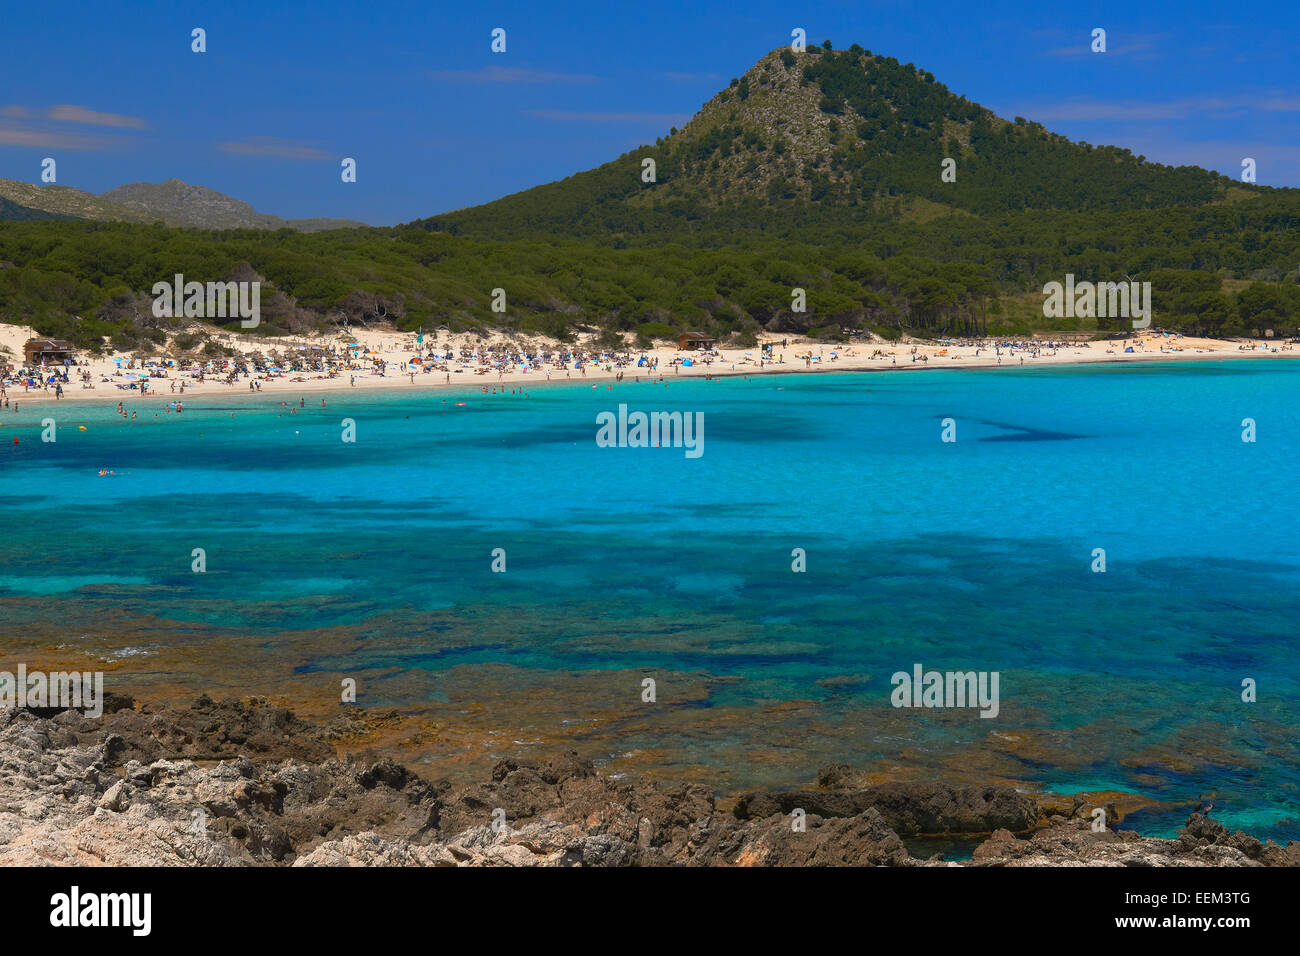 Cala Guya, Cala Agulla, Capdepera, Cala Ratjada, Cala Rajada, Mallorca Island, Majorca, Balearic Islands, Spain Stock Photo